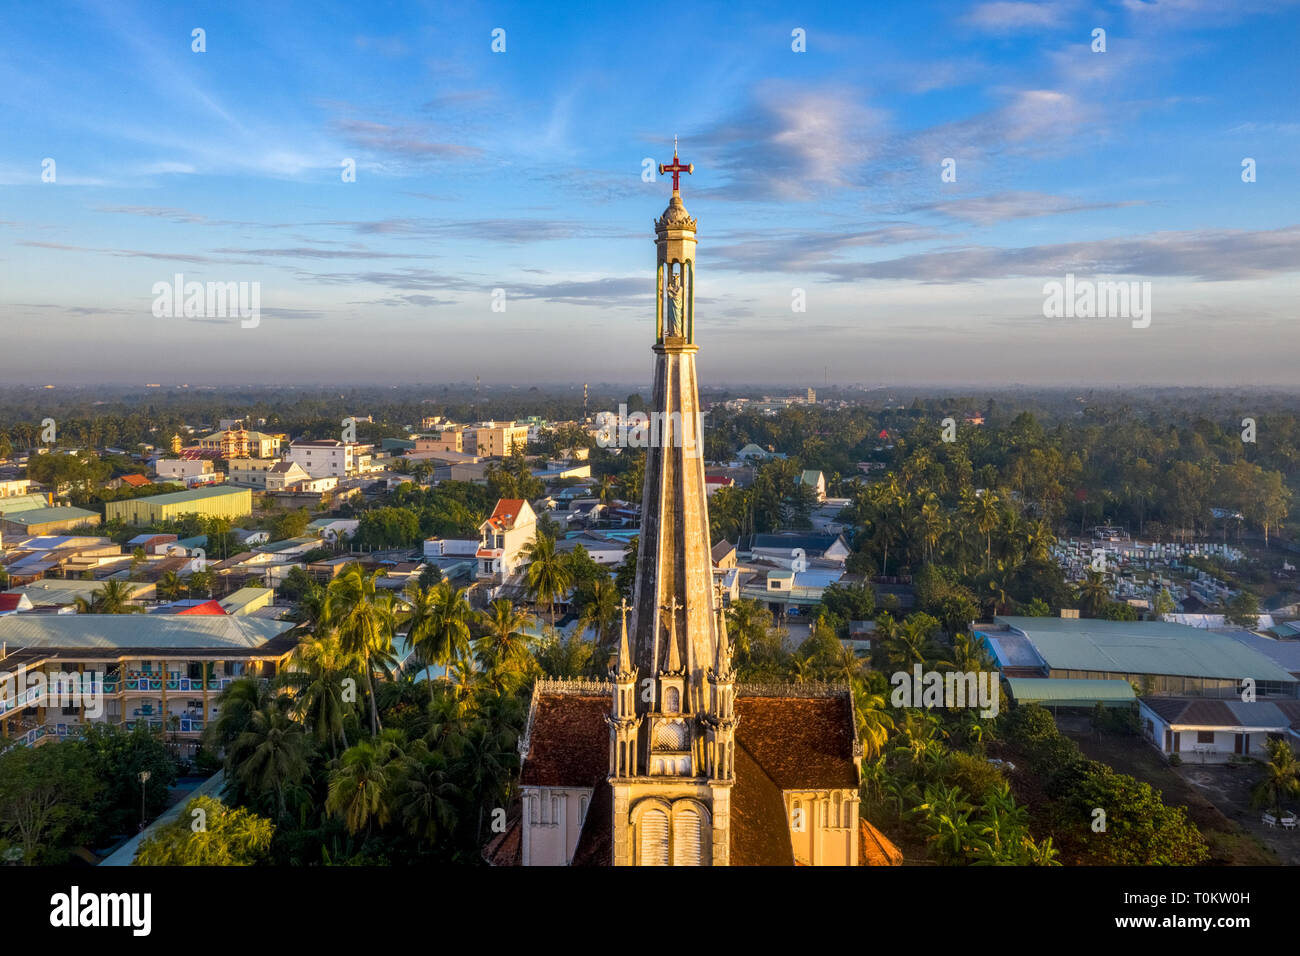 Luftaufnahme von Cai Kirche im Mekong Delta, In front Cai schwimmenden Markt. Glockenturm und die Statue der Gottesmutter. Tien Giang, Vietnam Stockfoto